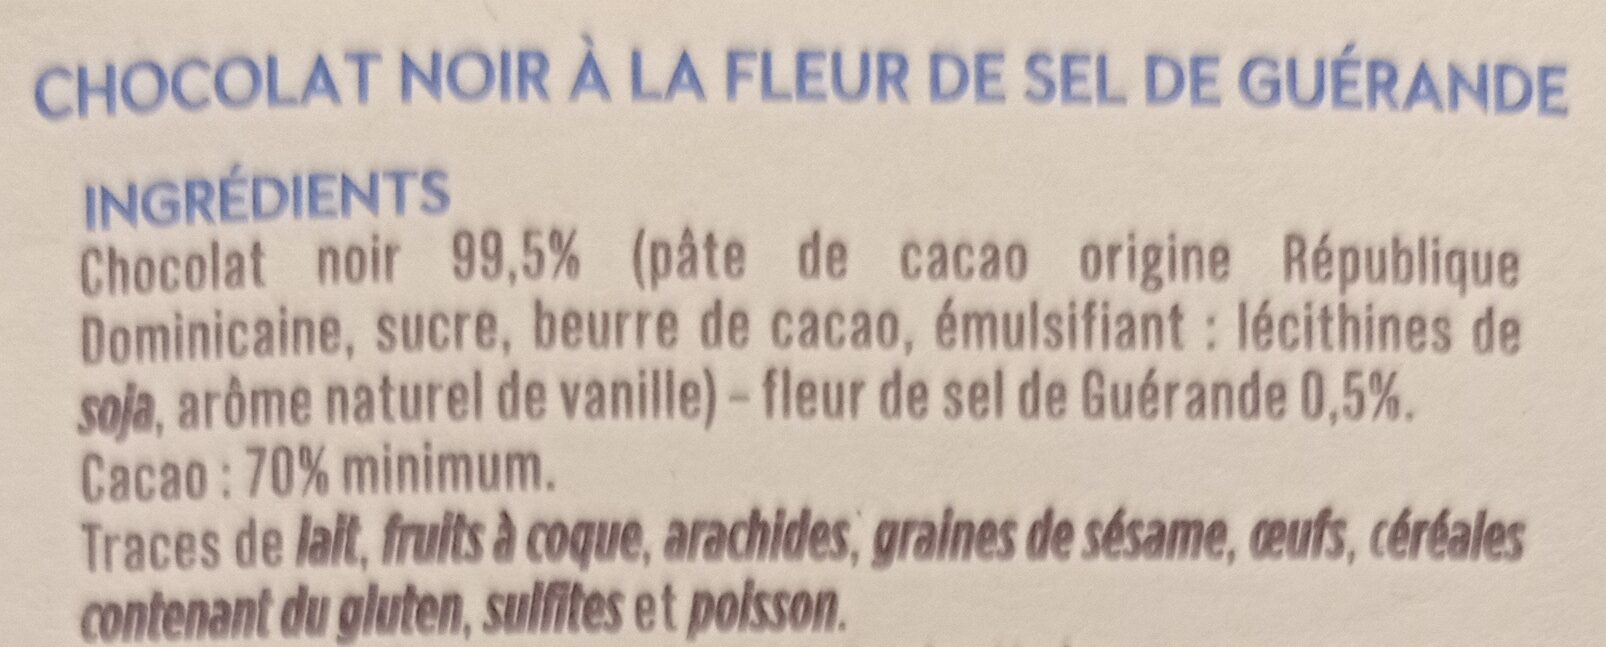 Chocolat noir fleur de sel de Guerande - Ingrediënten - fr